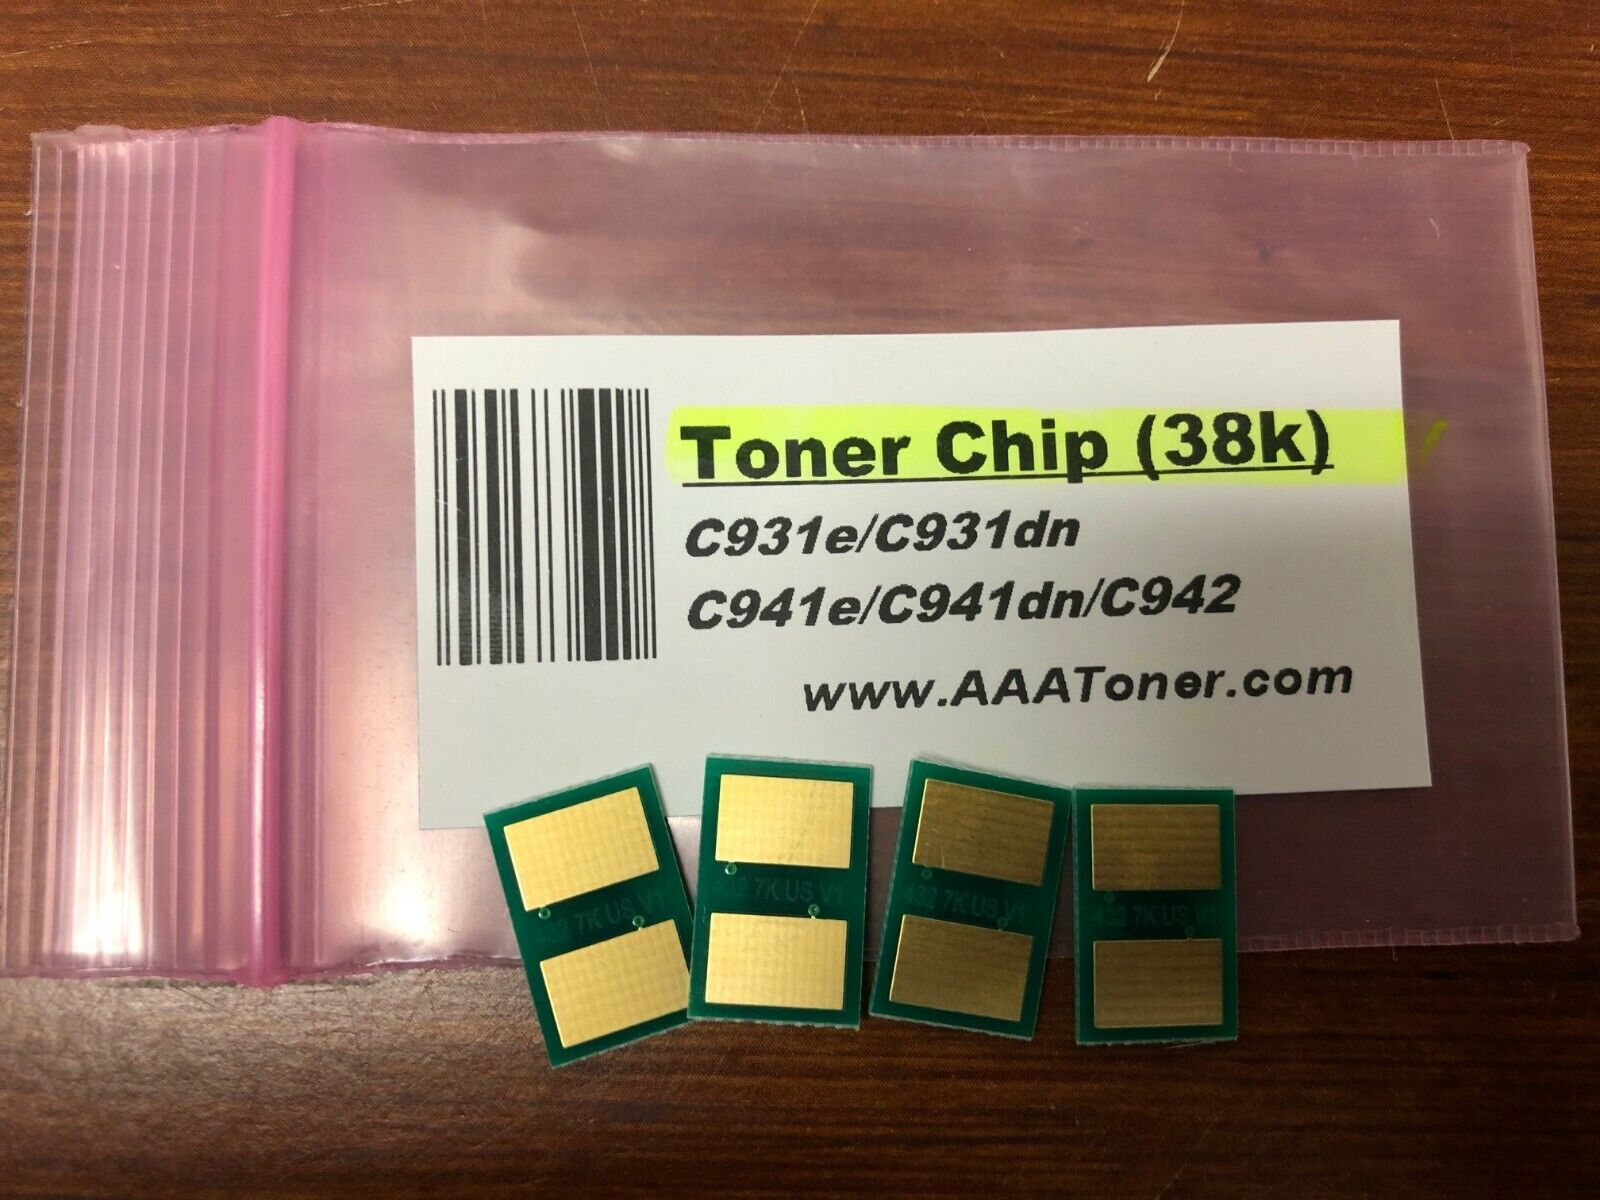 4 Toner Chip for use in OKI C900 series, C931, C941, C942 (38k) Refill